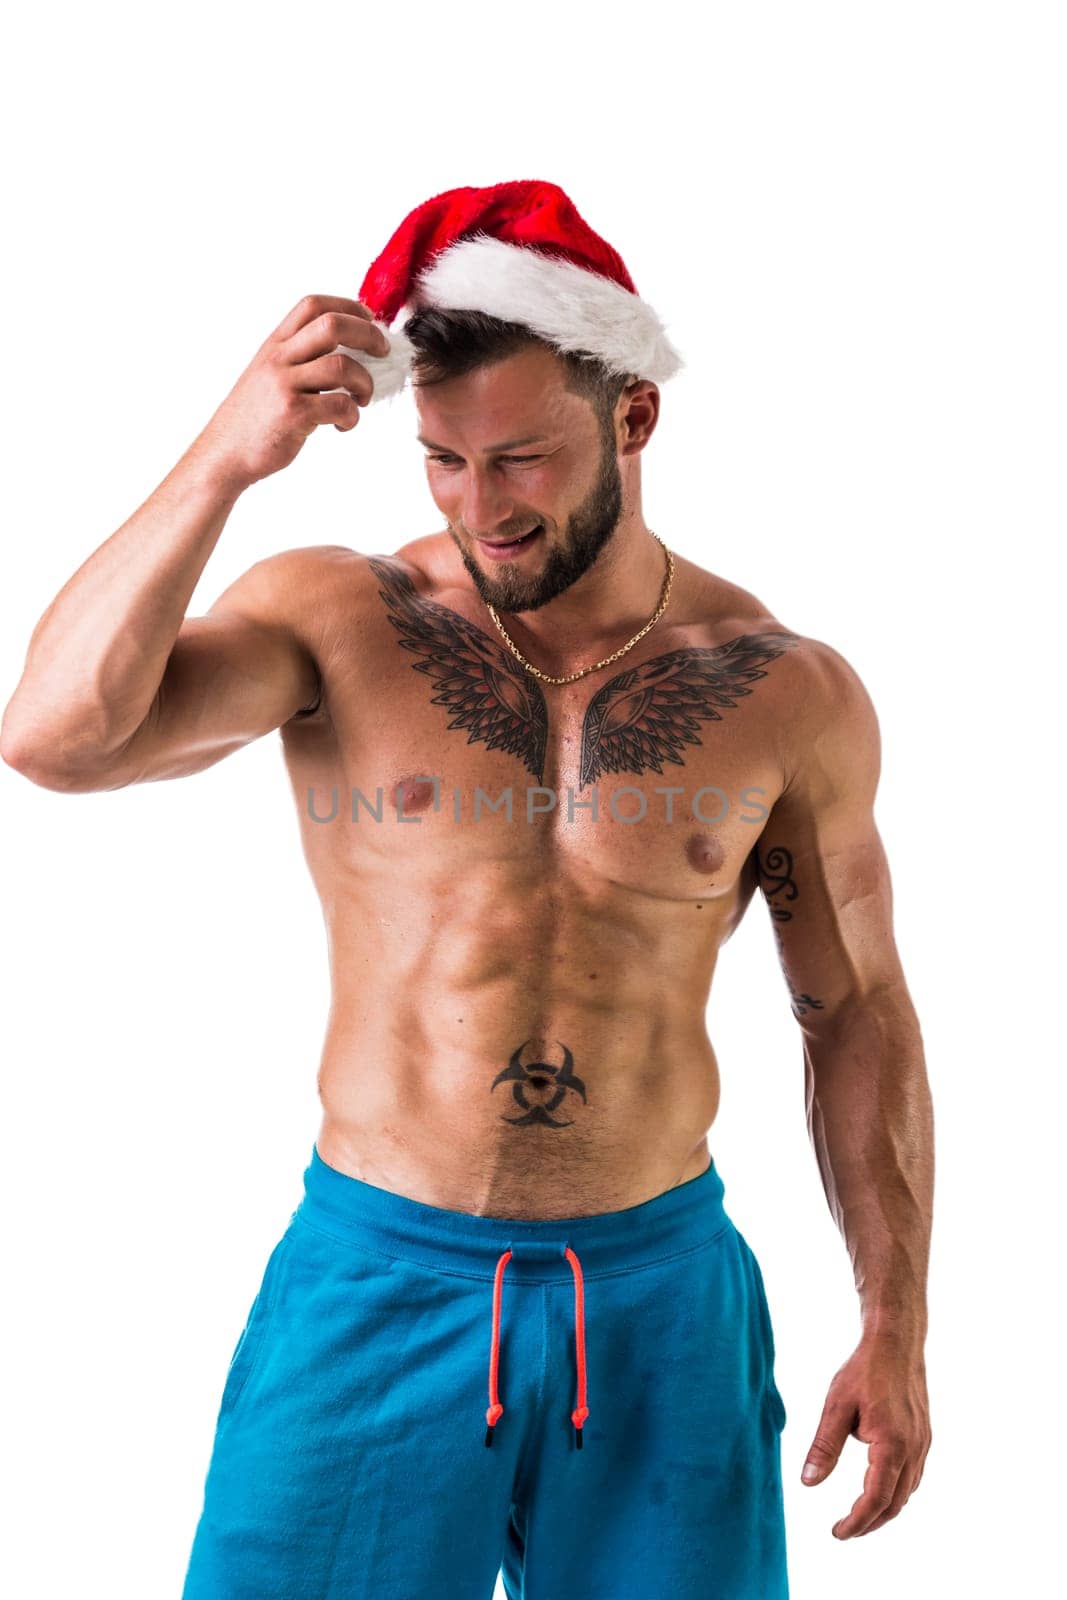 Christmas season: muscular bodybuilder shirtless wearing Santa Claus red hat by artofphoto